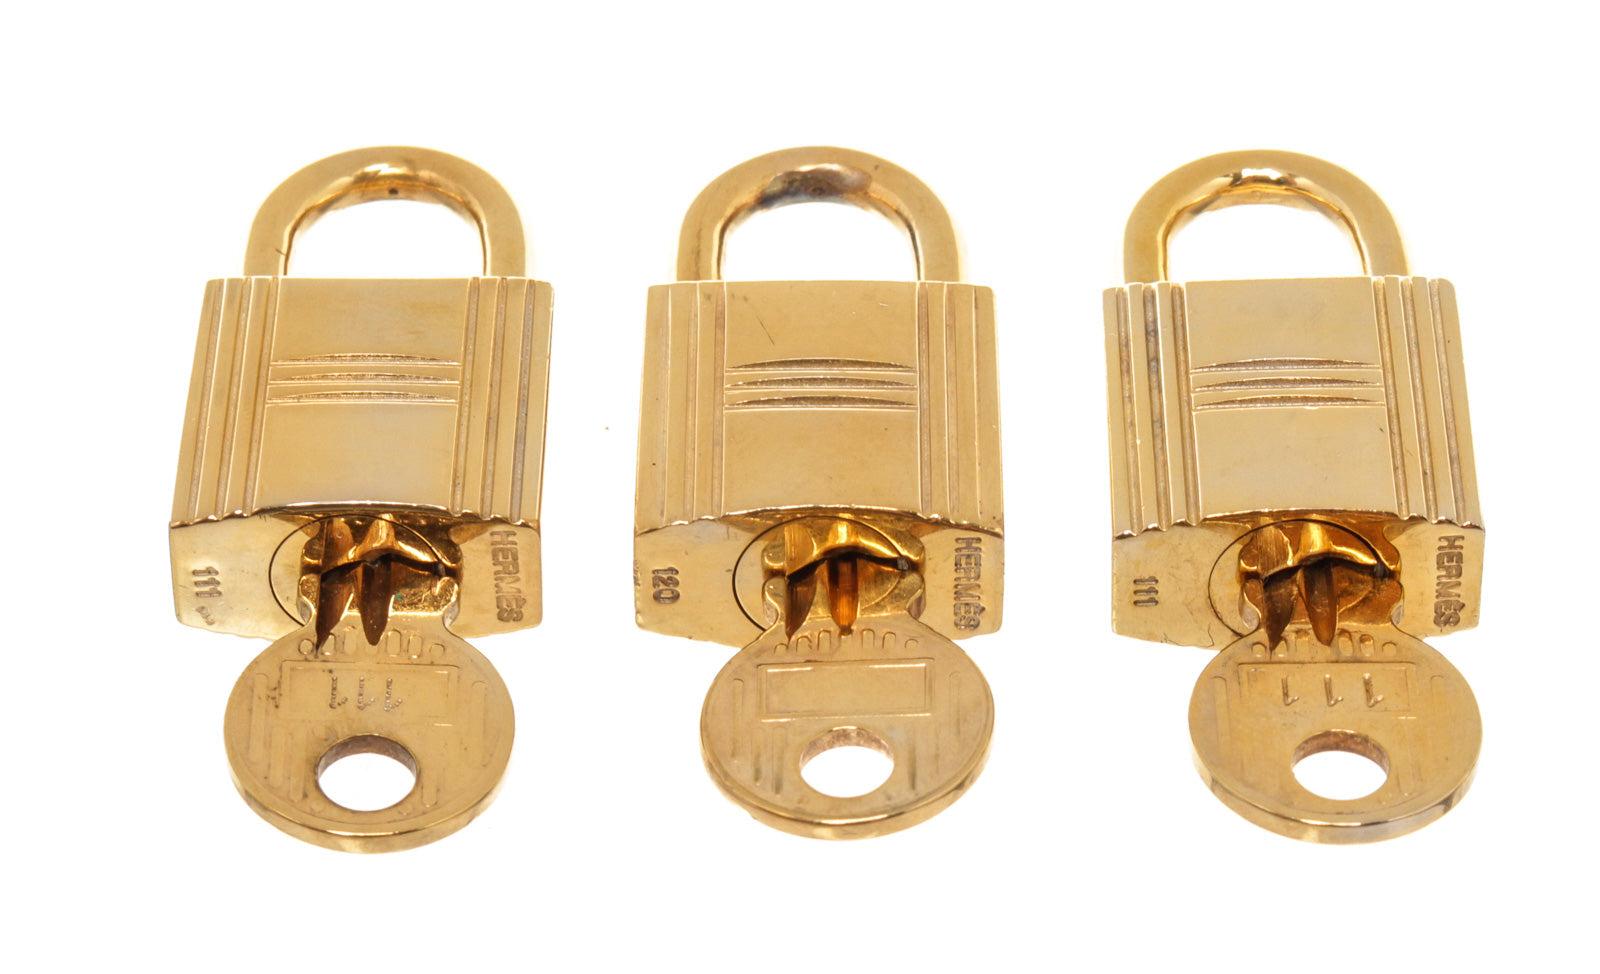 Hermes Gold Cadena Lock Schlüsselanhänger-Set mit Gold-Hartware und gedrehtem Schlossverschluss (Braun)